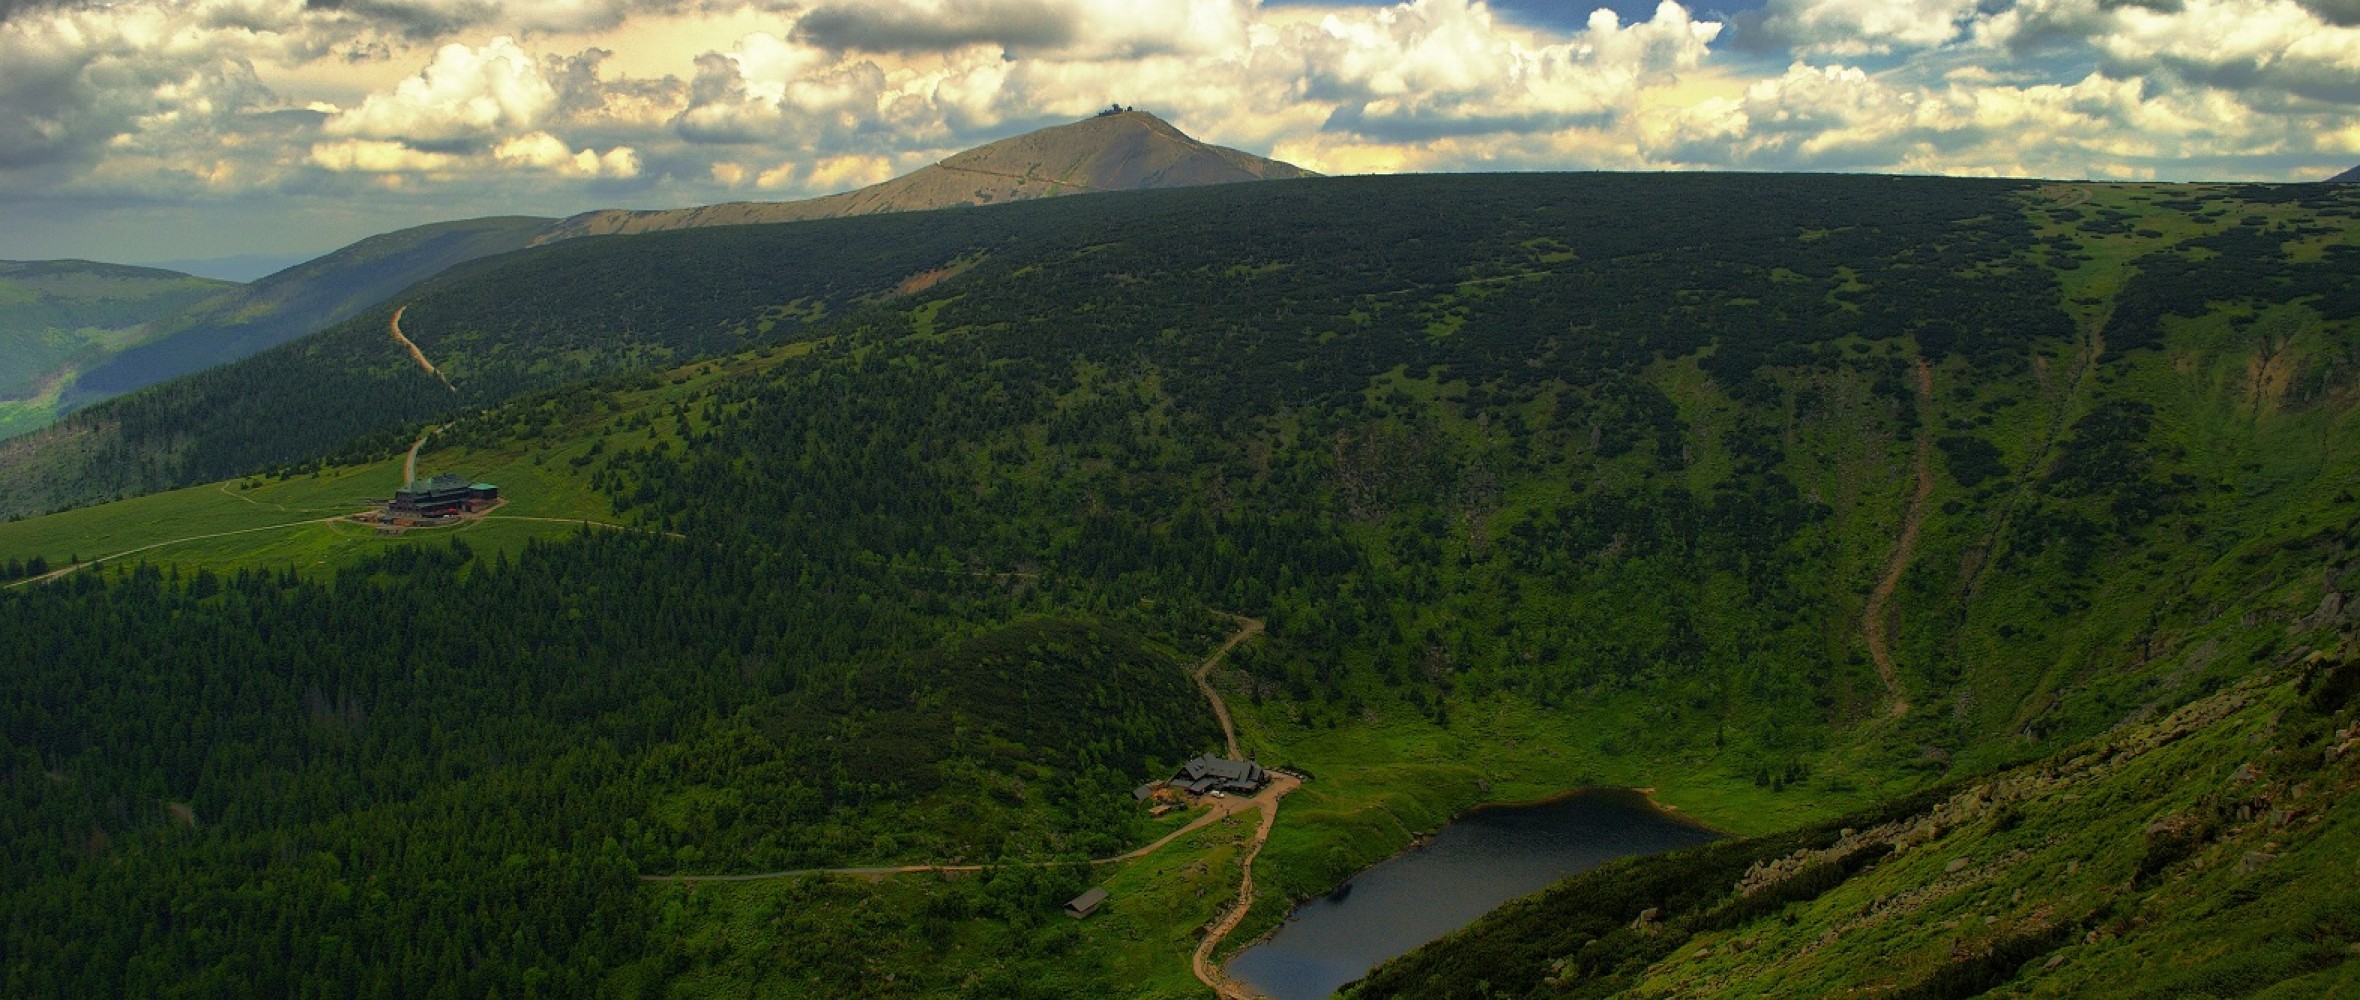 Giant Mountains | Czech Film Center